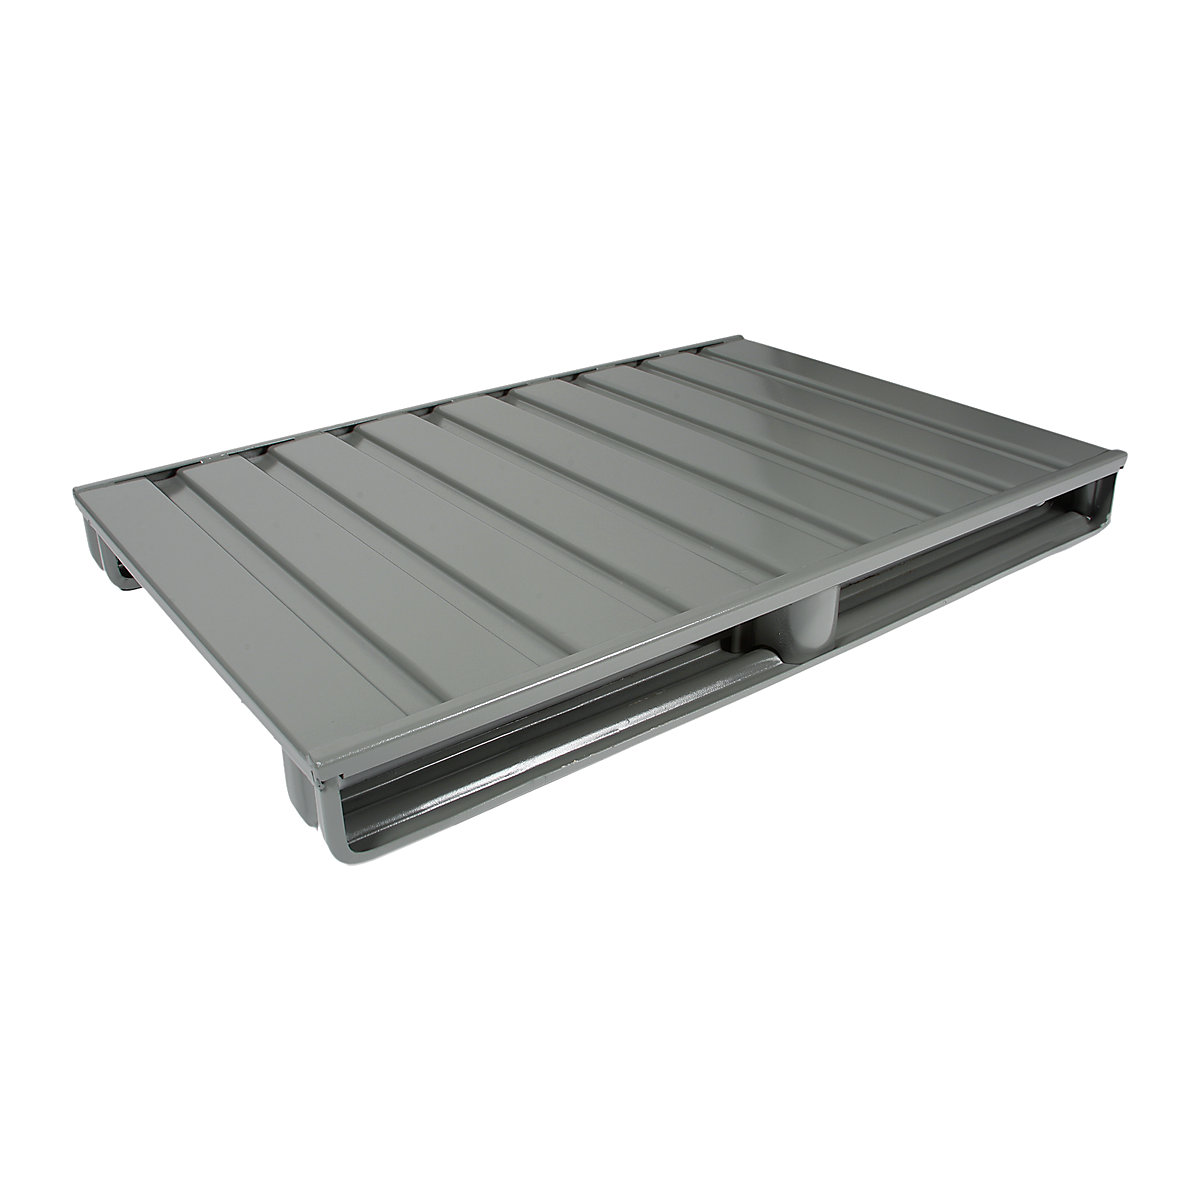 Palet plano de acero – Heson, L x A 1200 x 800 mm, carga máx. 2000 kg, gris ratón-4